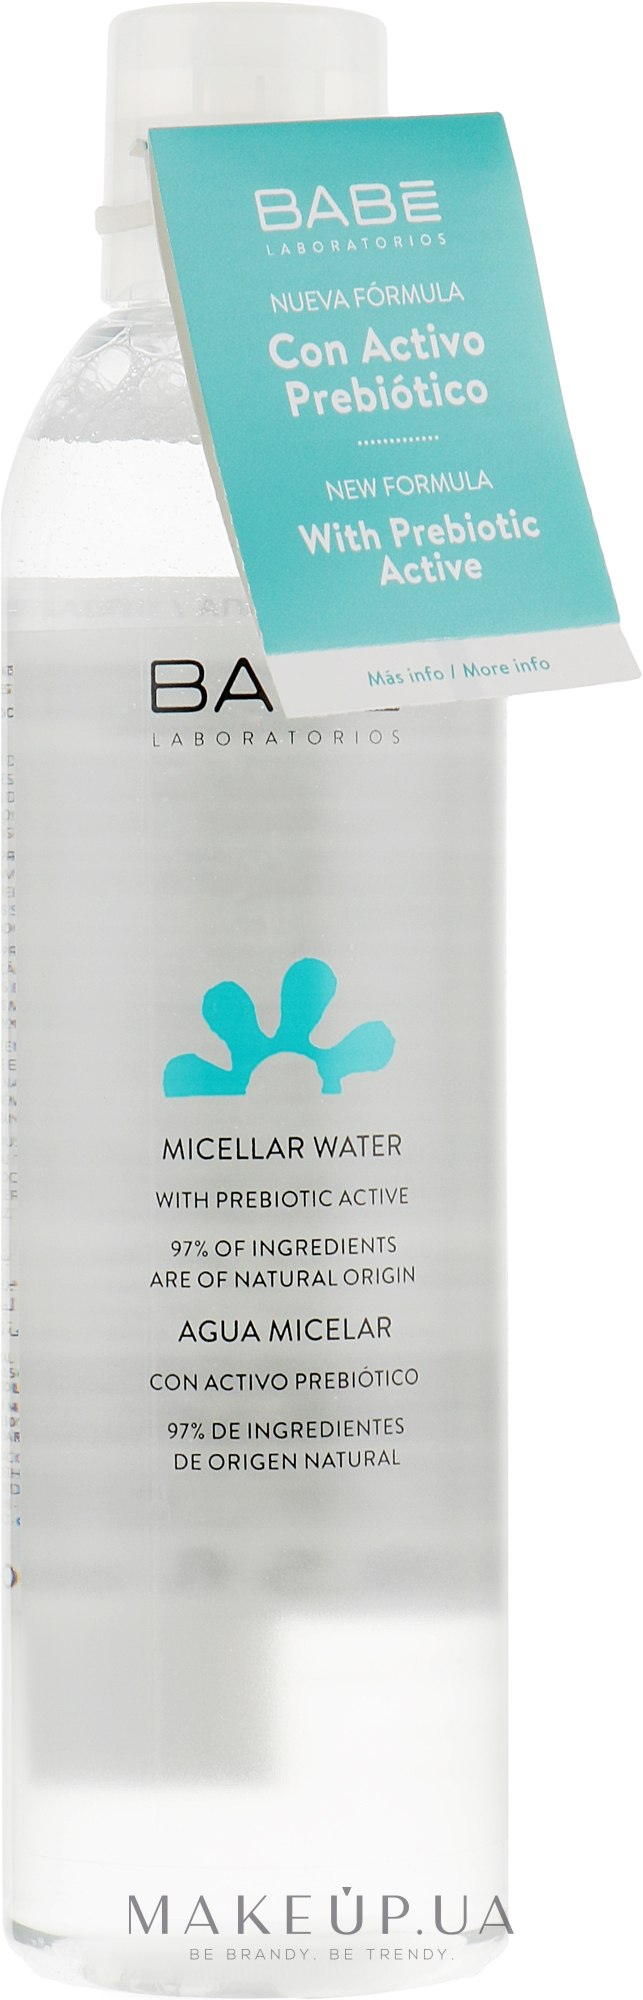 Міцелярна вода для будь-якого типу шкіри, навіть дуже чутливої - Babe Laboratorios Micellar Water  — фото 250ml